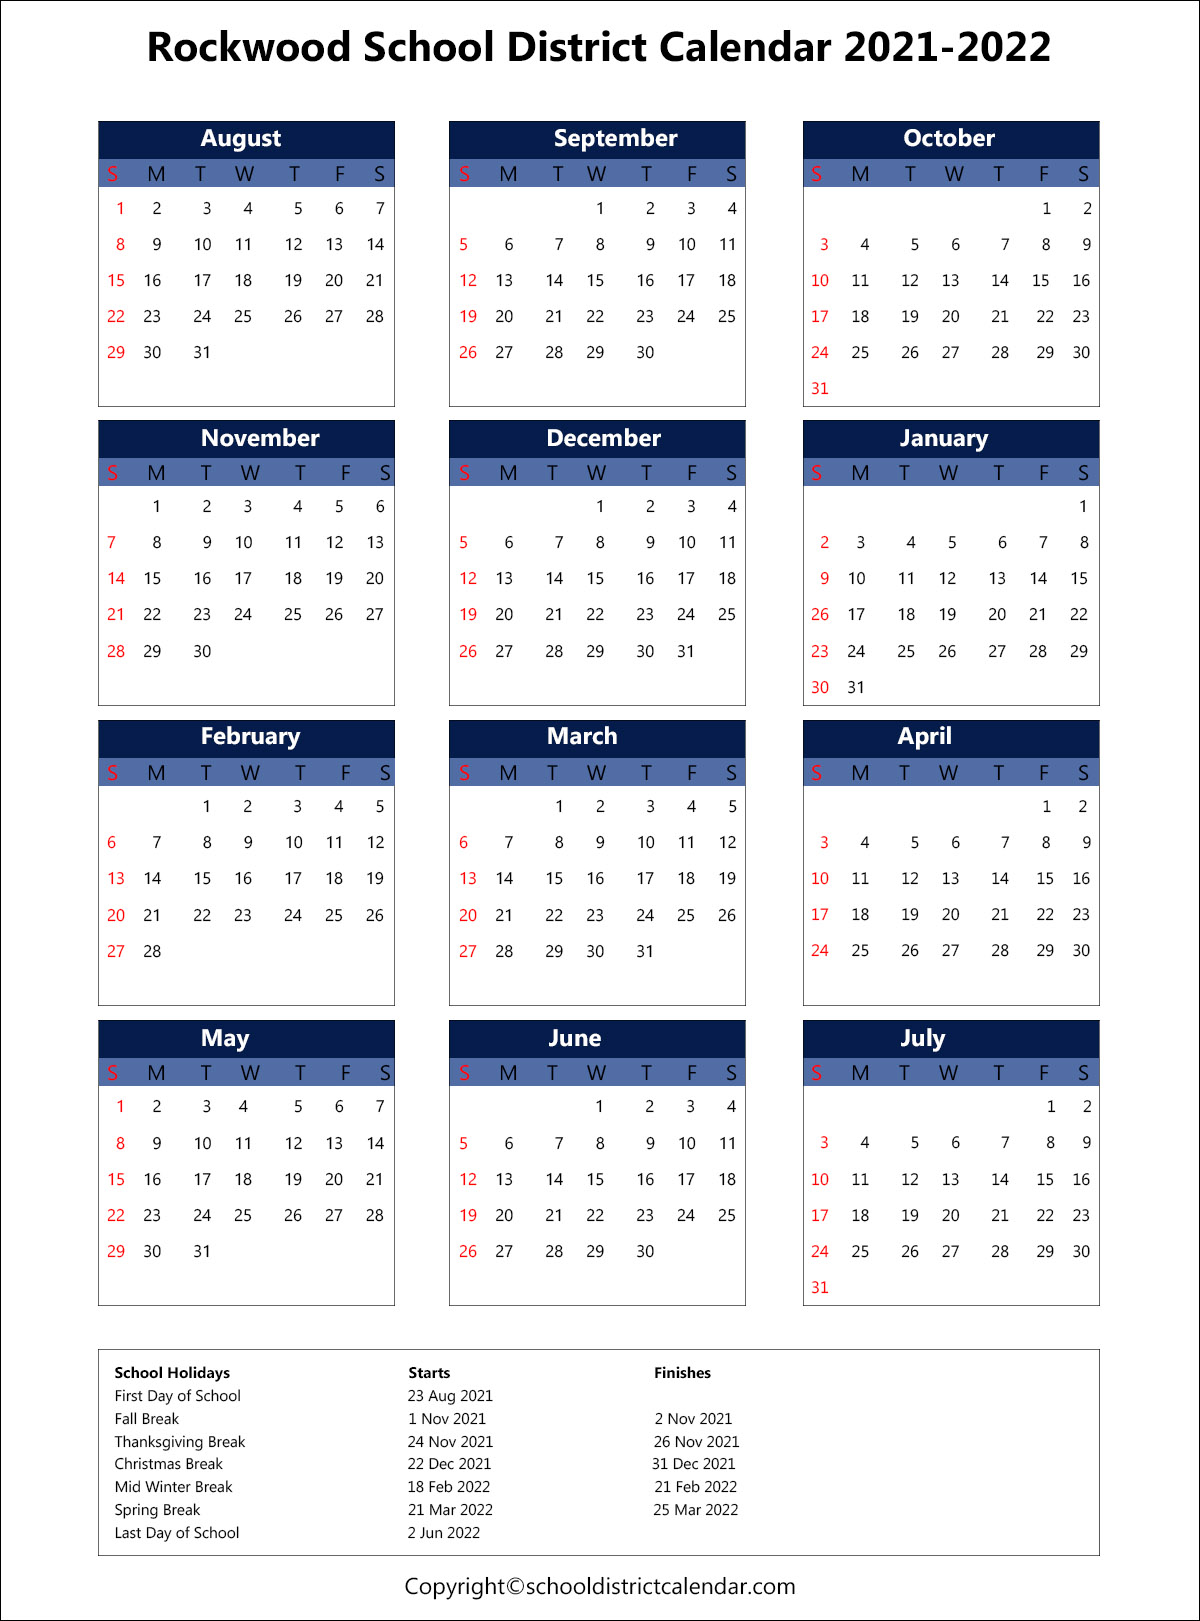 Rockwood School District Calendar 2021